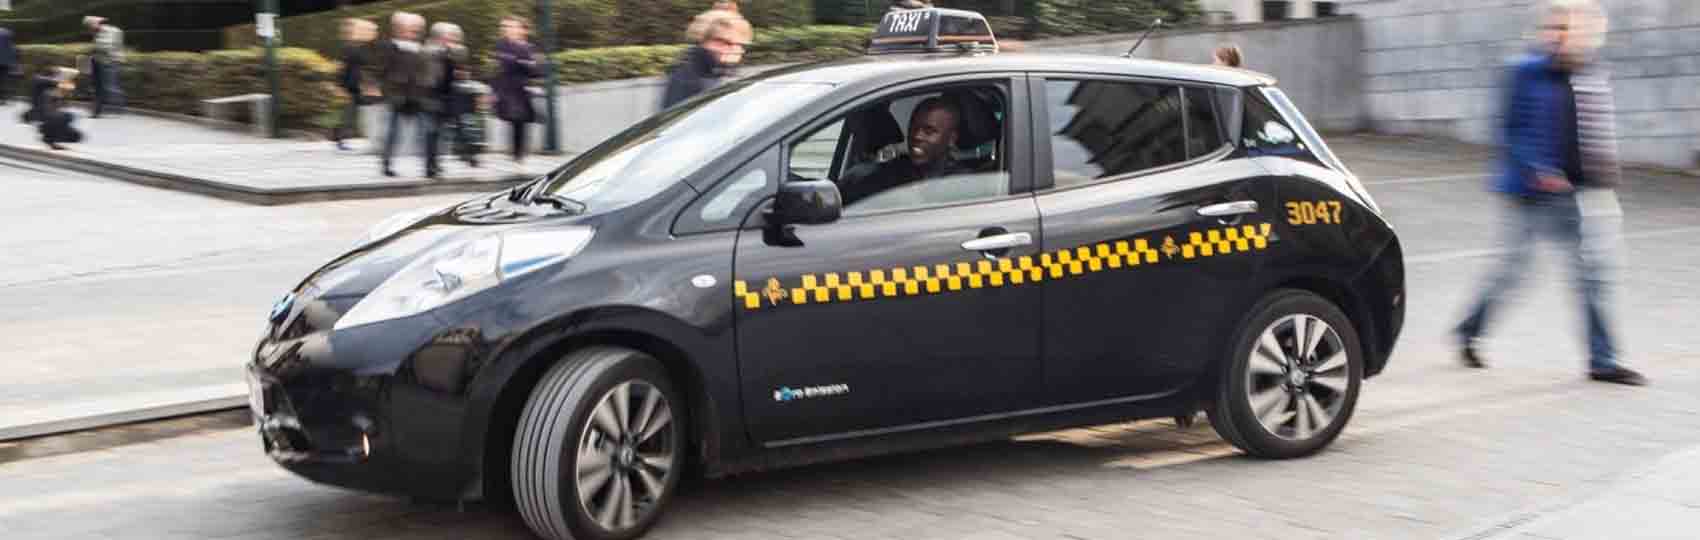 Noticias del sector del taxi y la movilidad en Bélgica.  Mantente informado de todas las noticias del taxi de Bélgica en el grupo de Facebook de Todo Taxi.